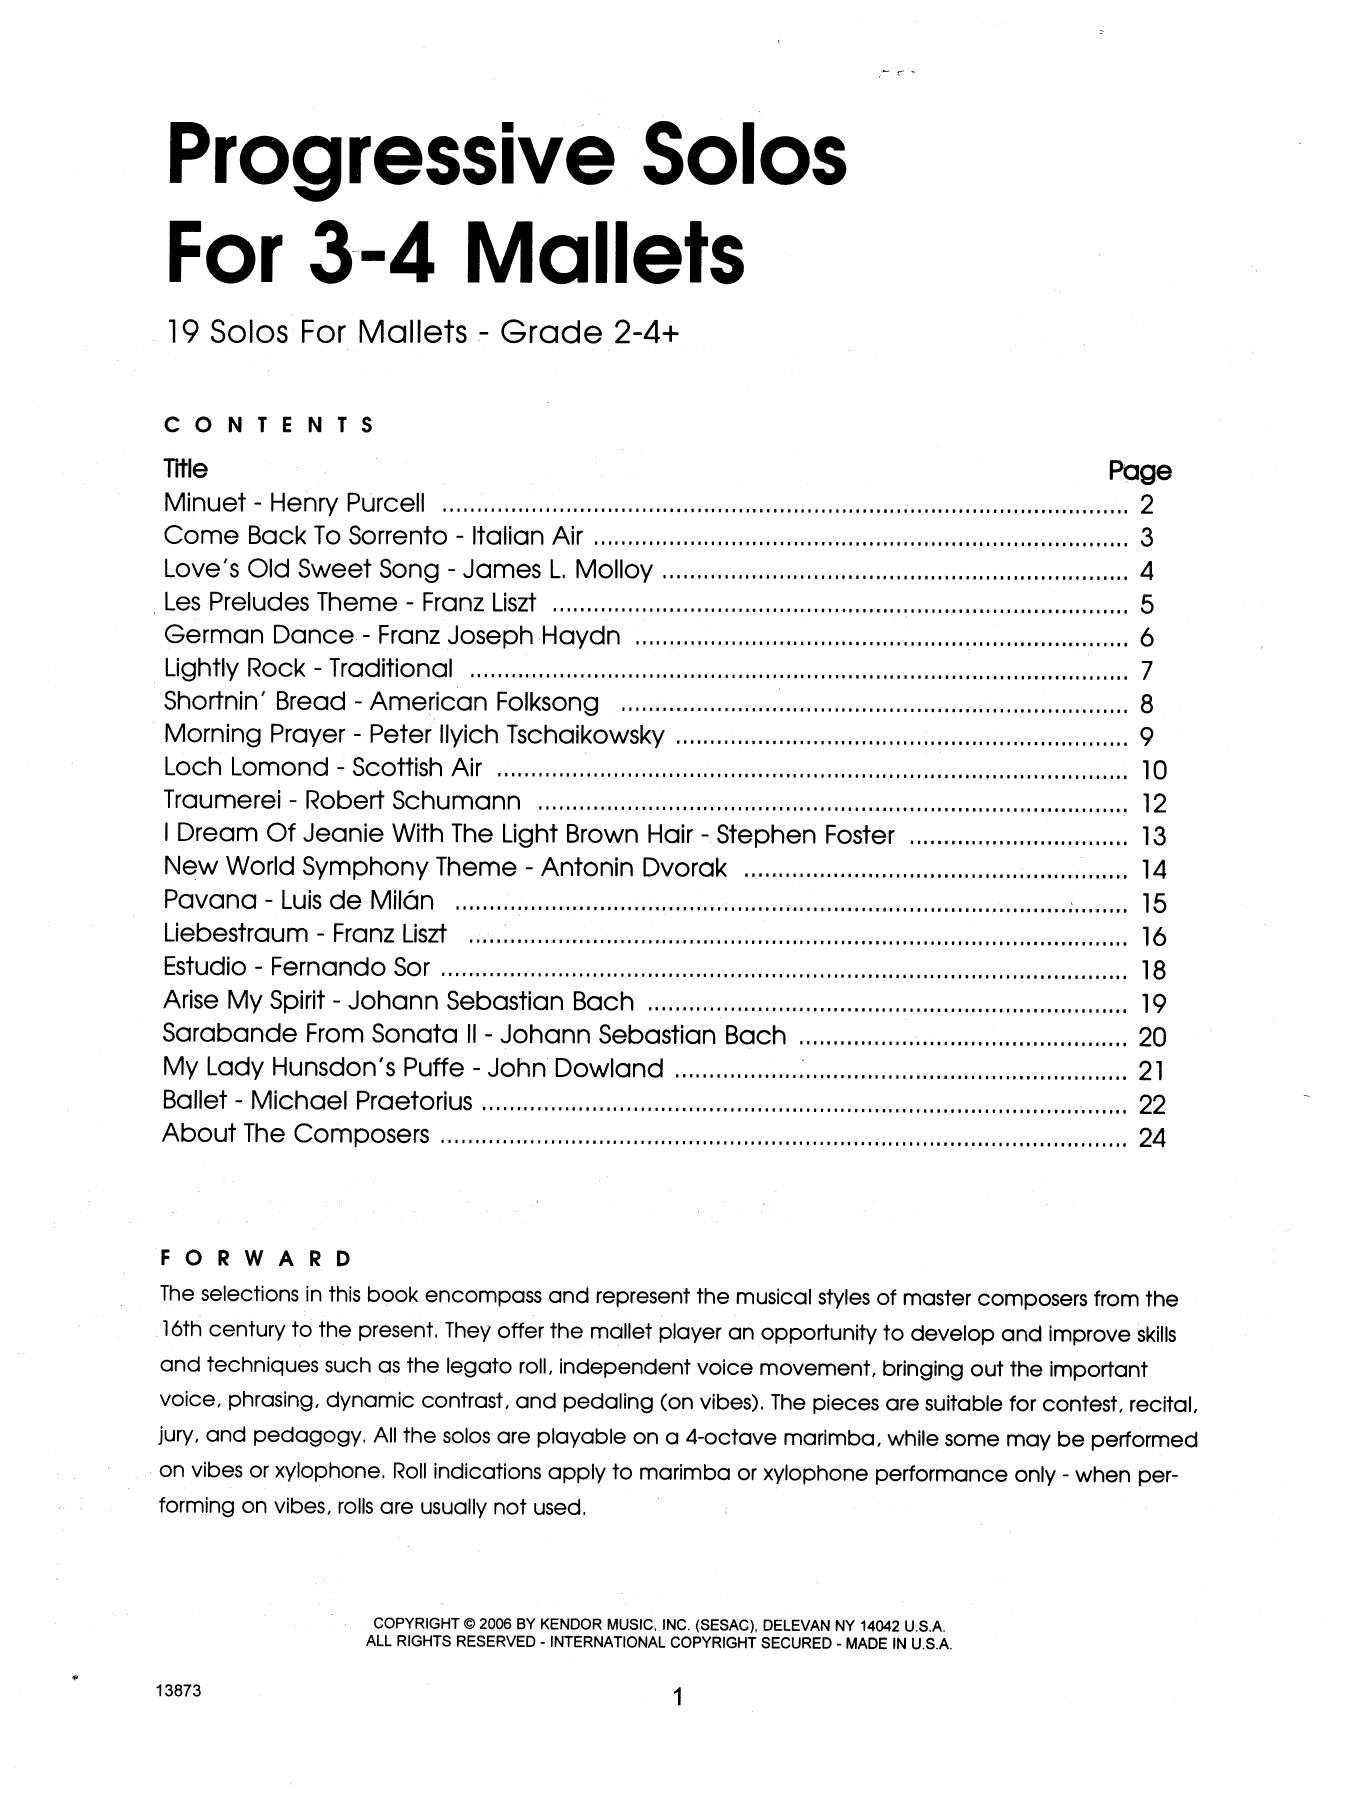 Progressive Solos For 3-4 Mallets (Percussion Solo) von Murray Houllif